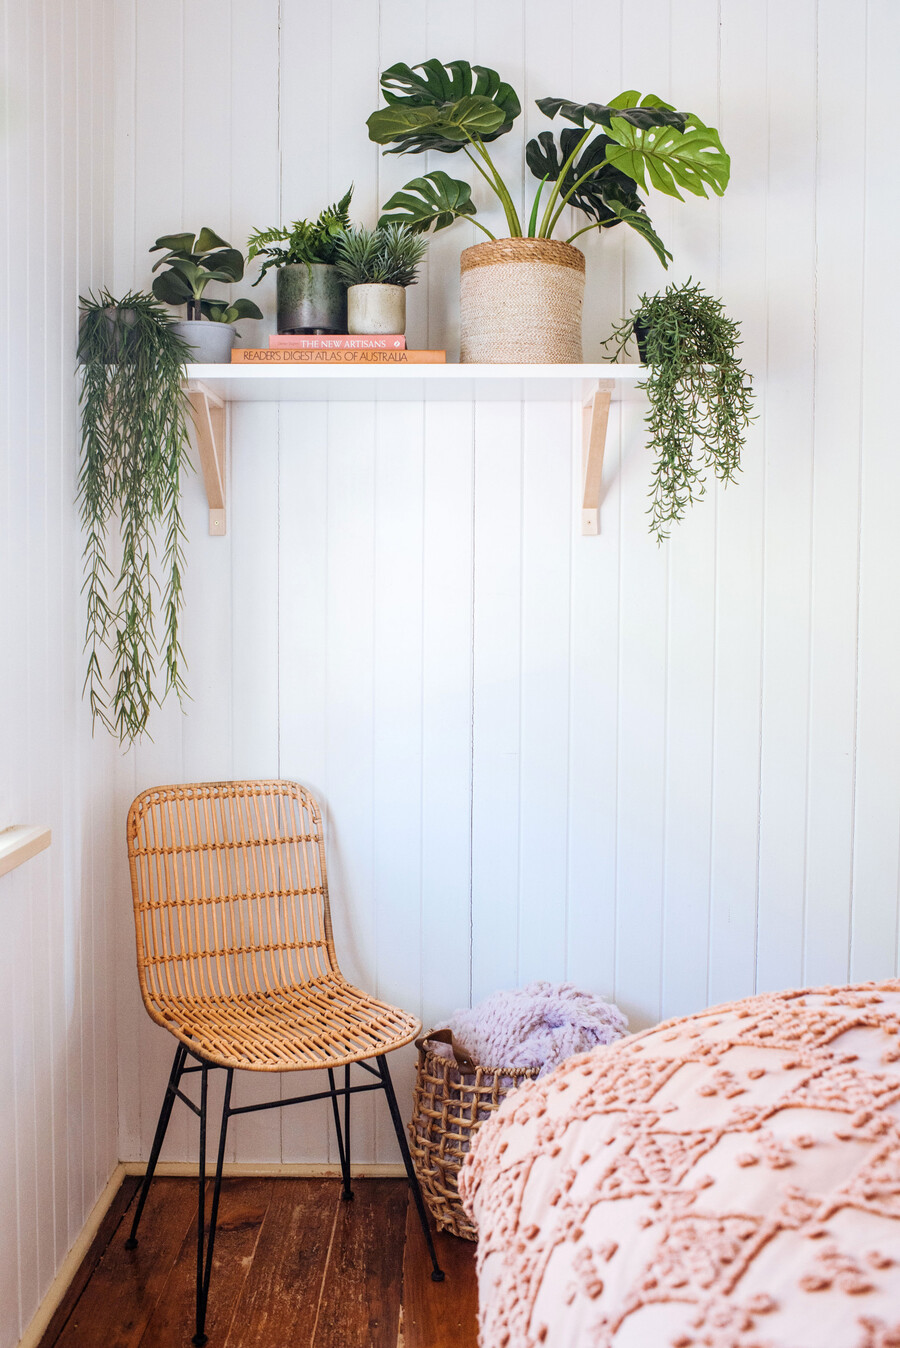 Varios maceteros con plantas sobre una repisa son perfectas para adornar un dormitorio.